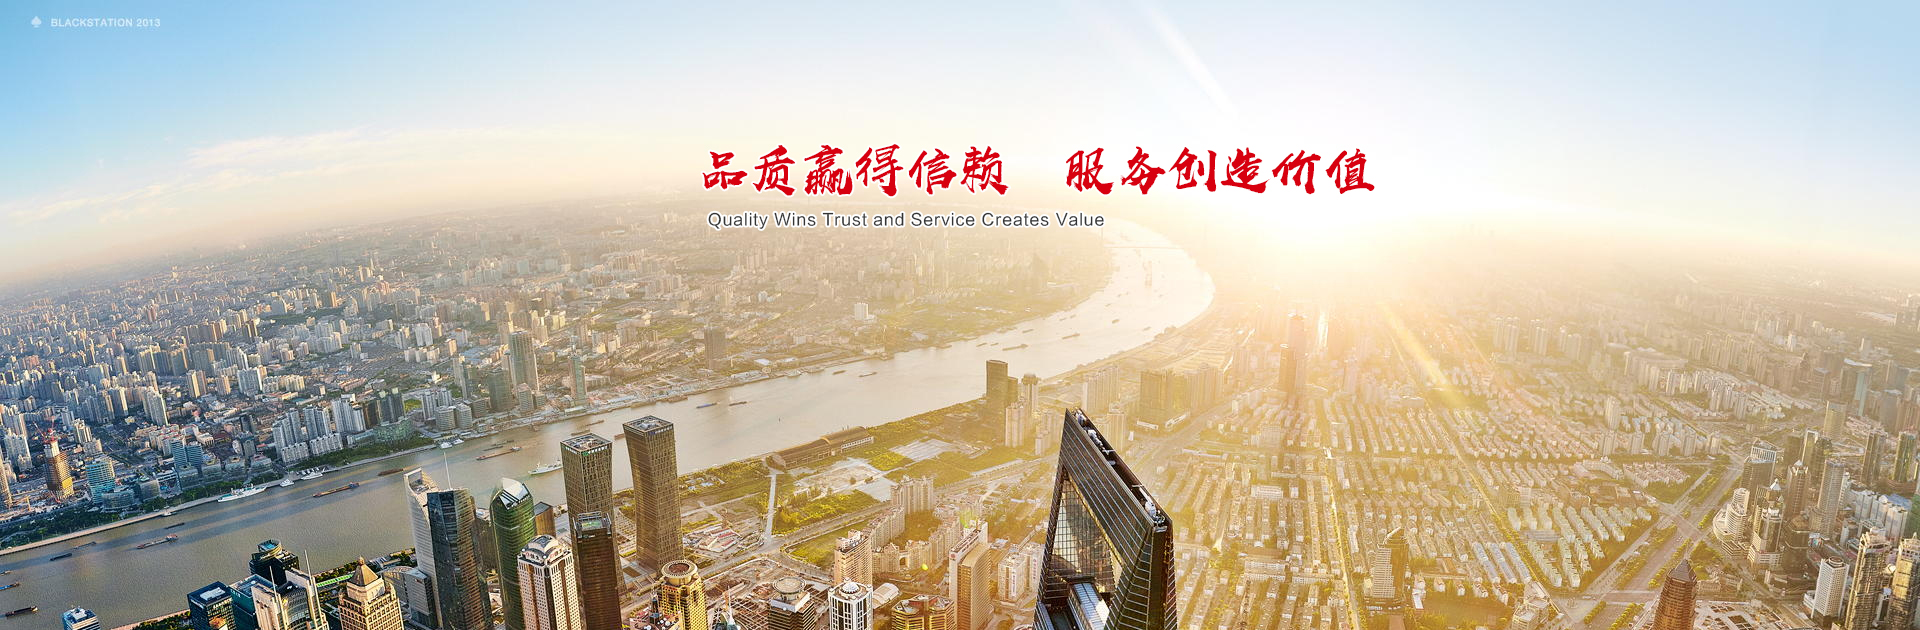  新半岛娱乐(中国)有限公司焦点图标题3